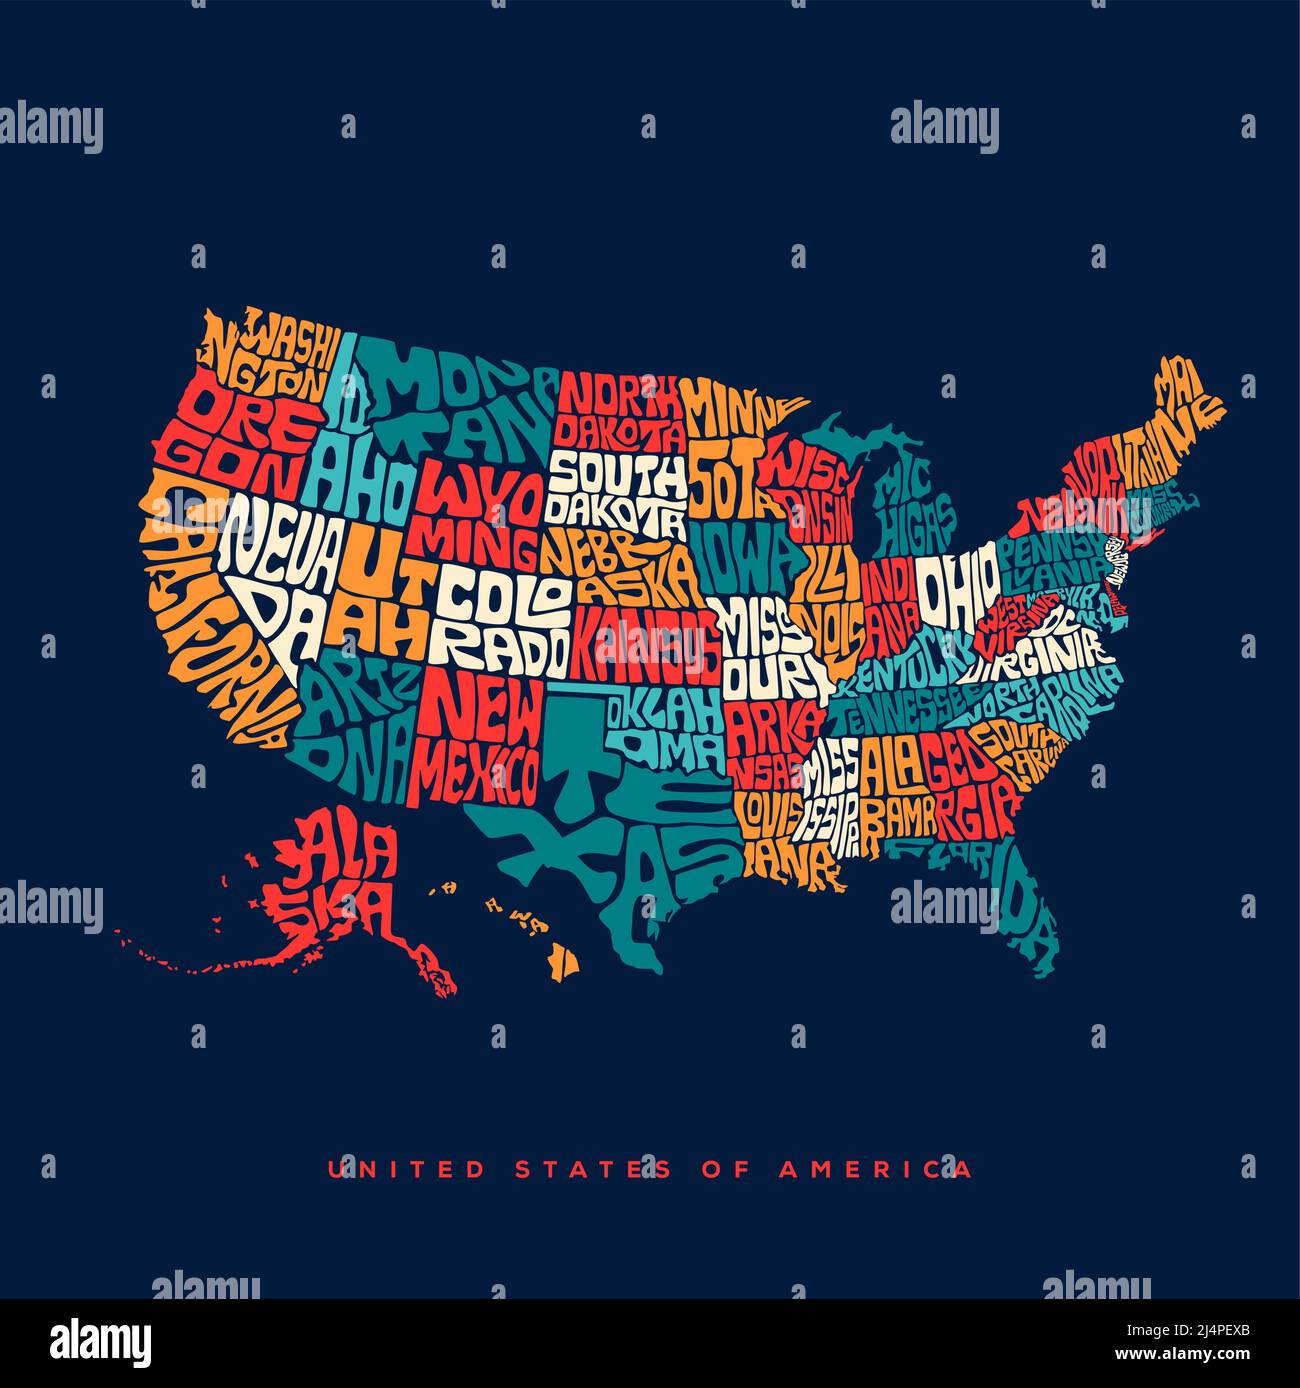 Typographie des cartes des États-Unis. Etats-Unis d'Amérique carte typographie Art. UAS lettrage de carte avec tous les noms d'Etats. Illustration de Vecteur